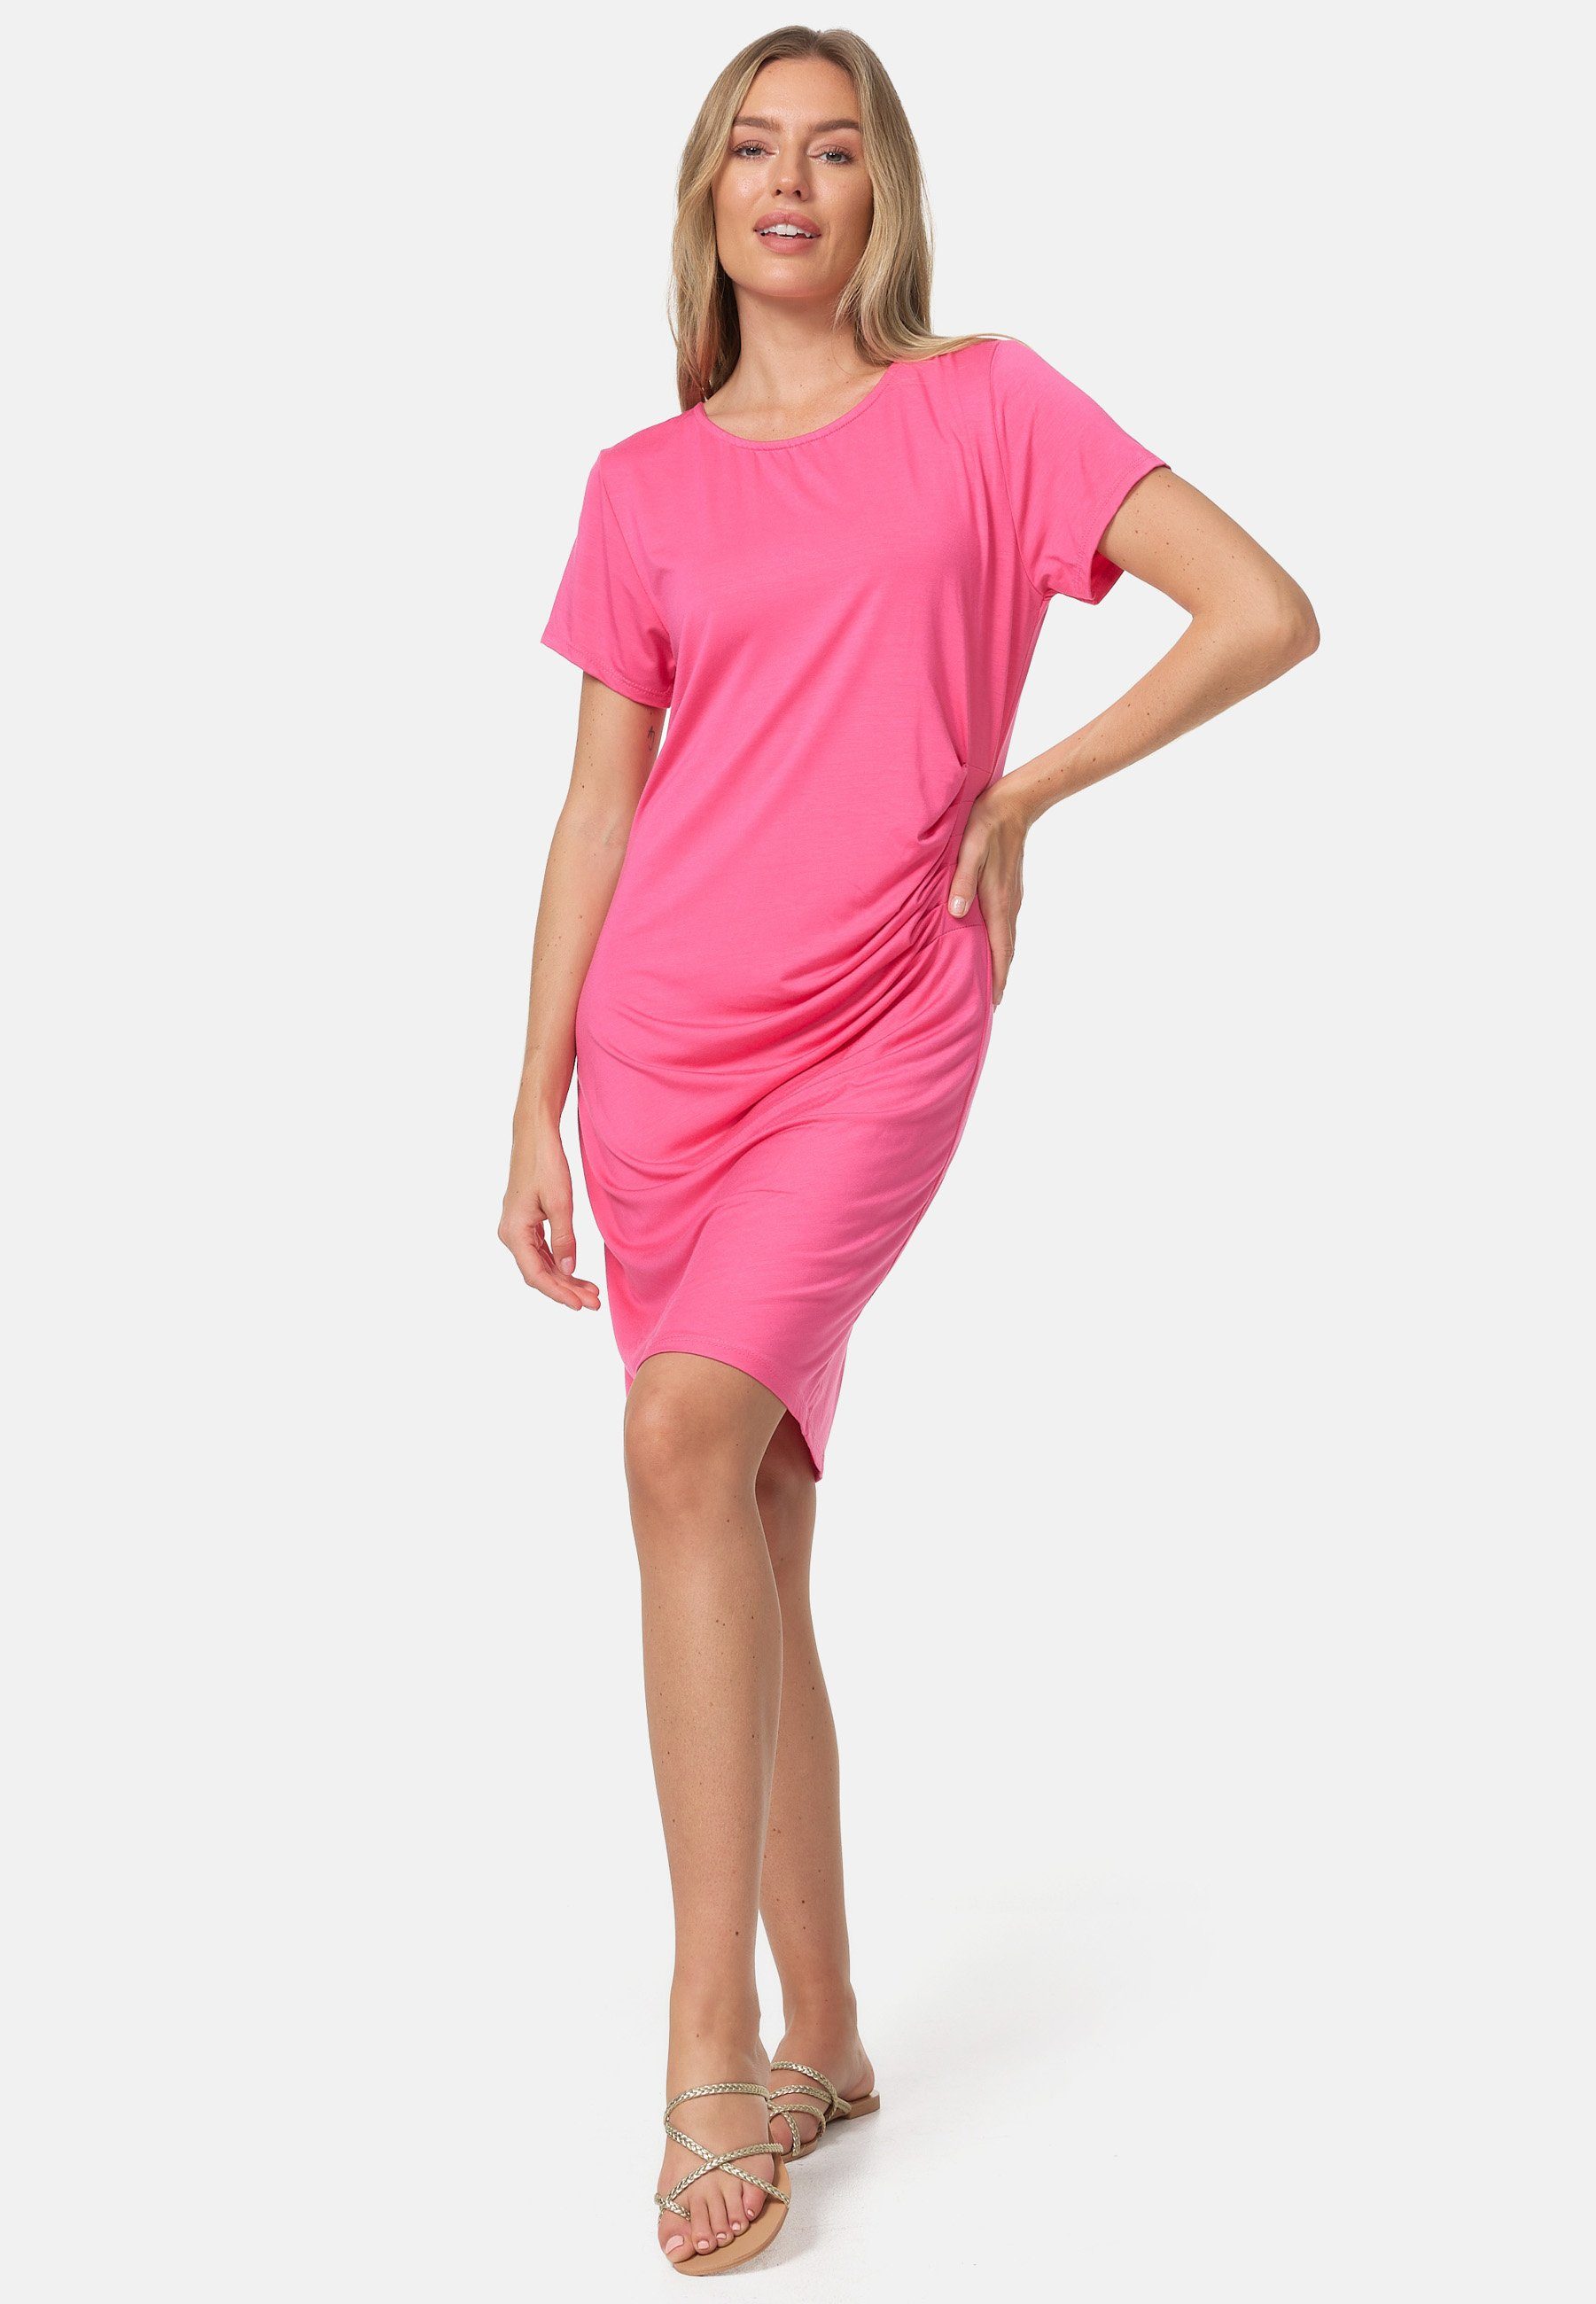 PM SELECTED Shirtkleid PM41 (Modisches Longshirt, Shirtkleid für den Sommer mit seitlicher Raffung) Seitliche Raffung, Elastisch, Leicht Pink